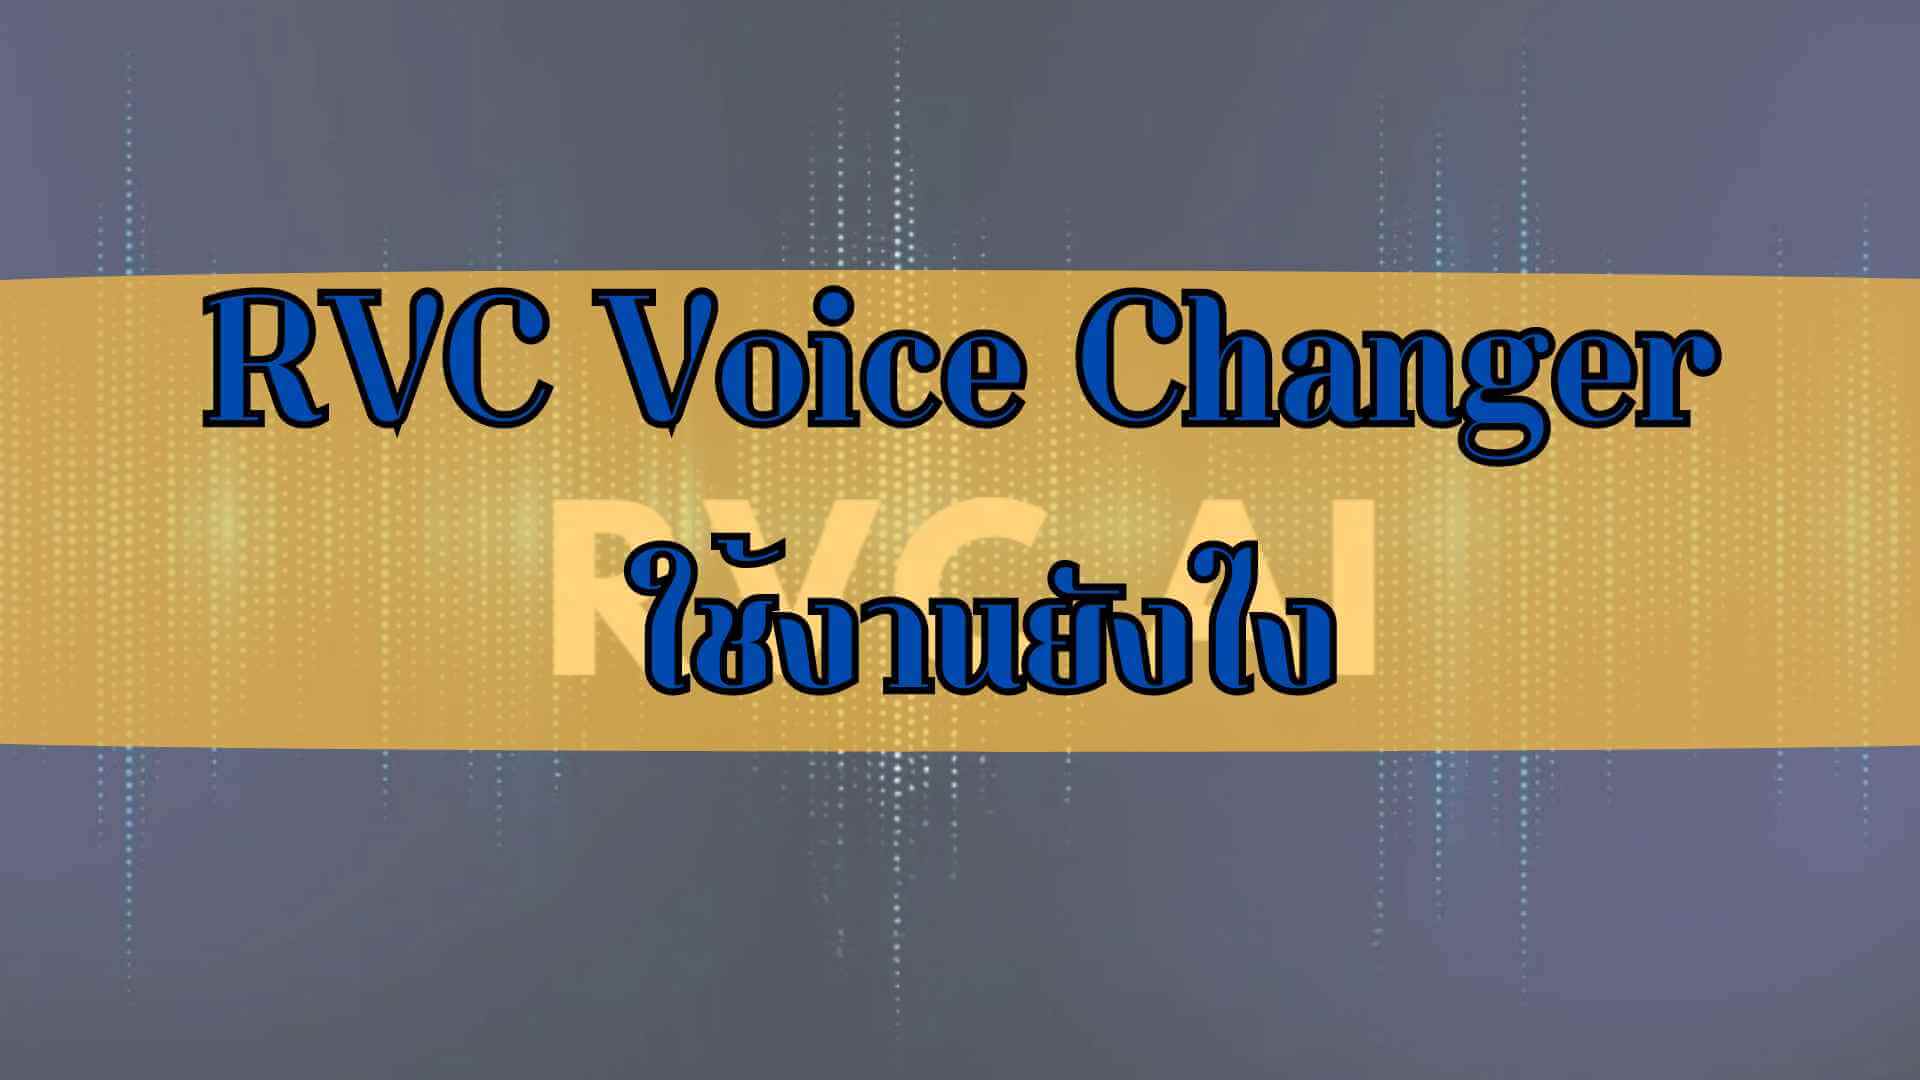 【 2567 】RVC Voice Changer ที่กำลังเป็นกระแสคืออะไร? วิธีใช้งานสำหรับมือใหม่